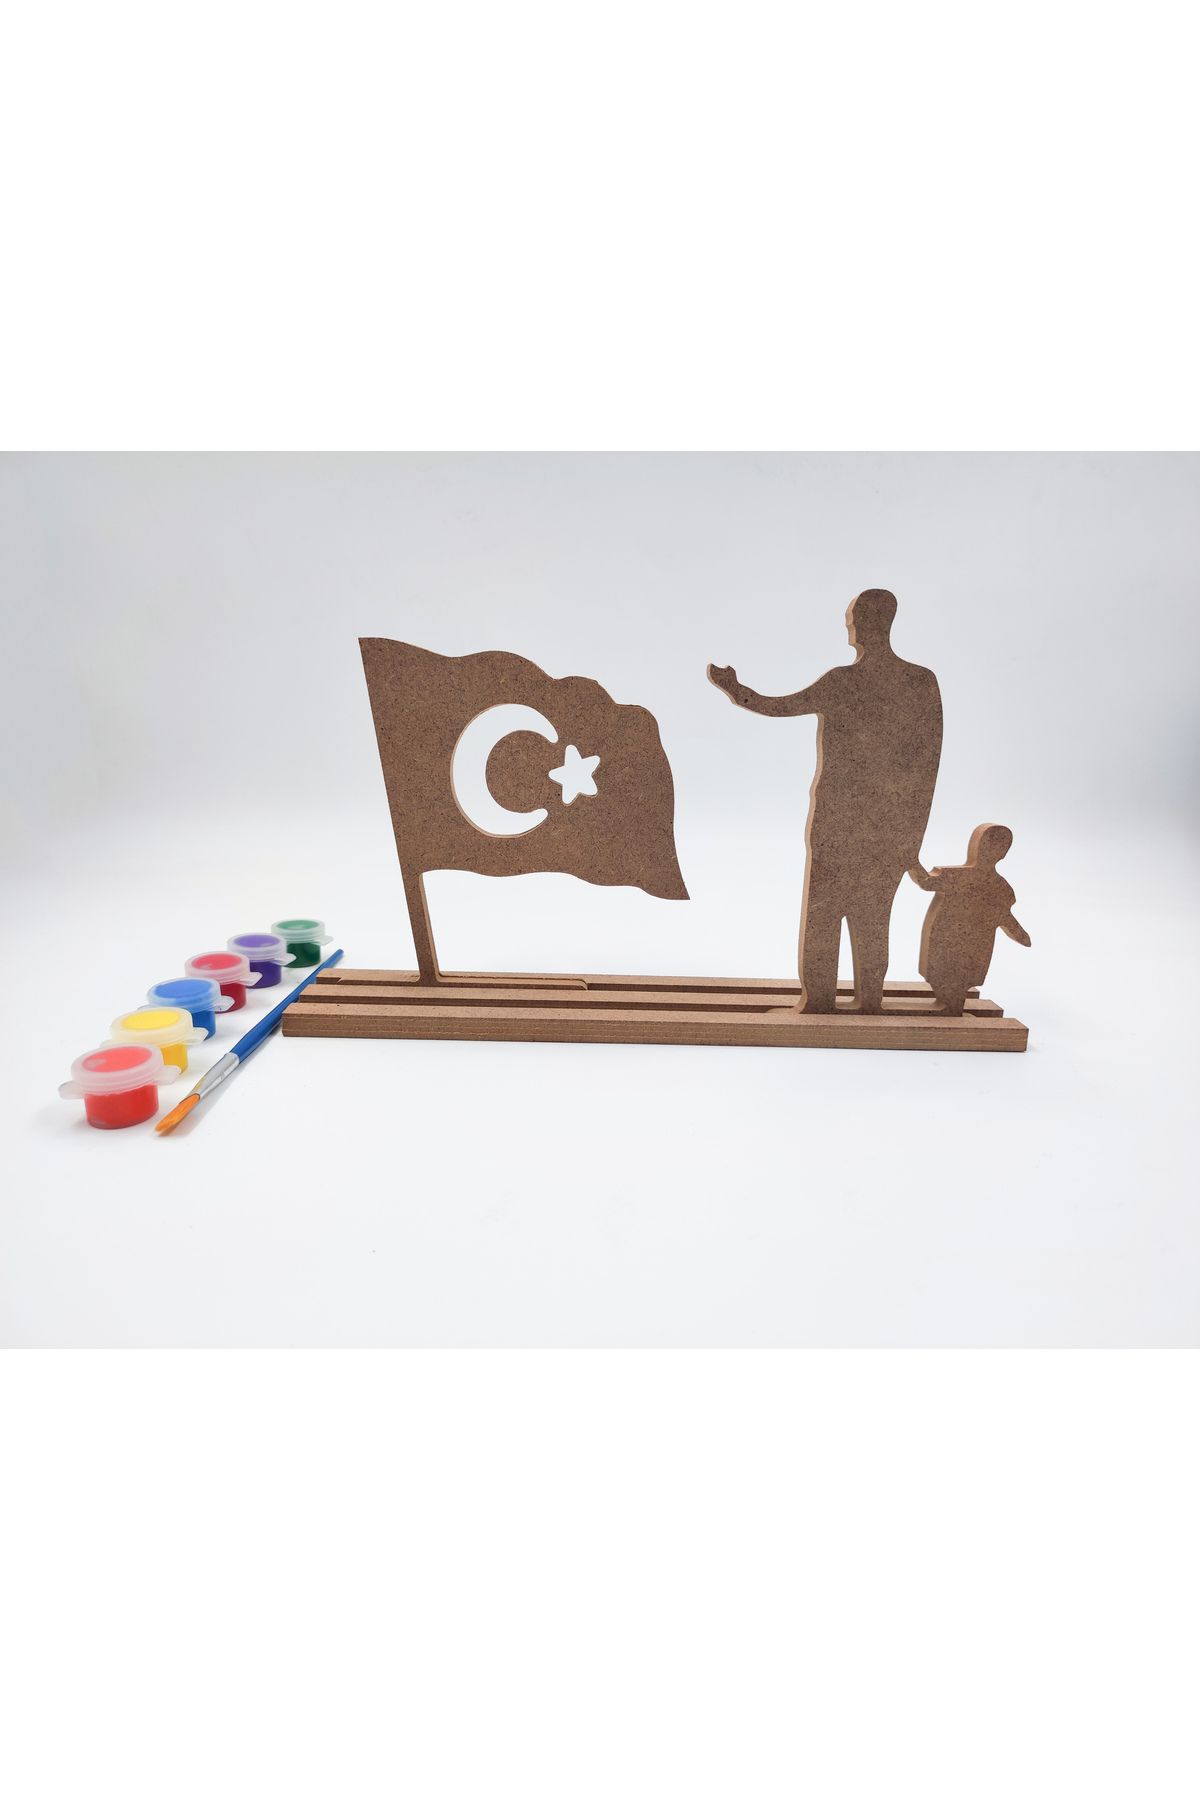 İCONS 23 Nisan Ulusal Egemenlik ve Çocuk Bayramı Ahşap Boyama Seti (Türk Bayrağı- Atatürk)